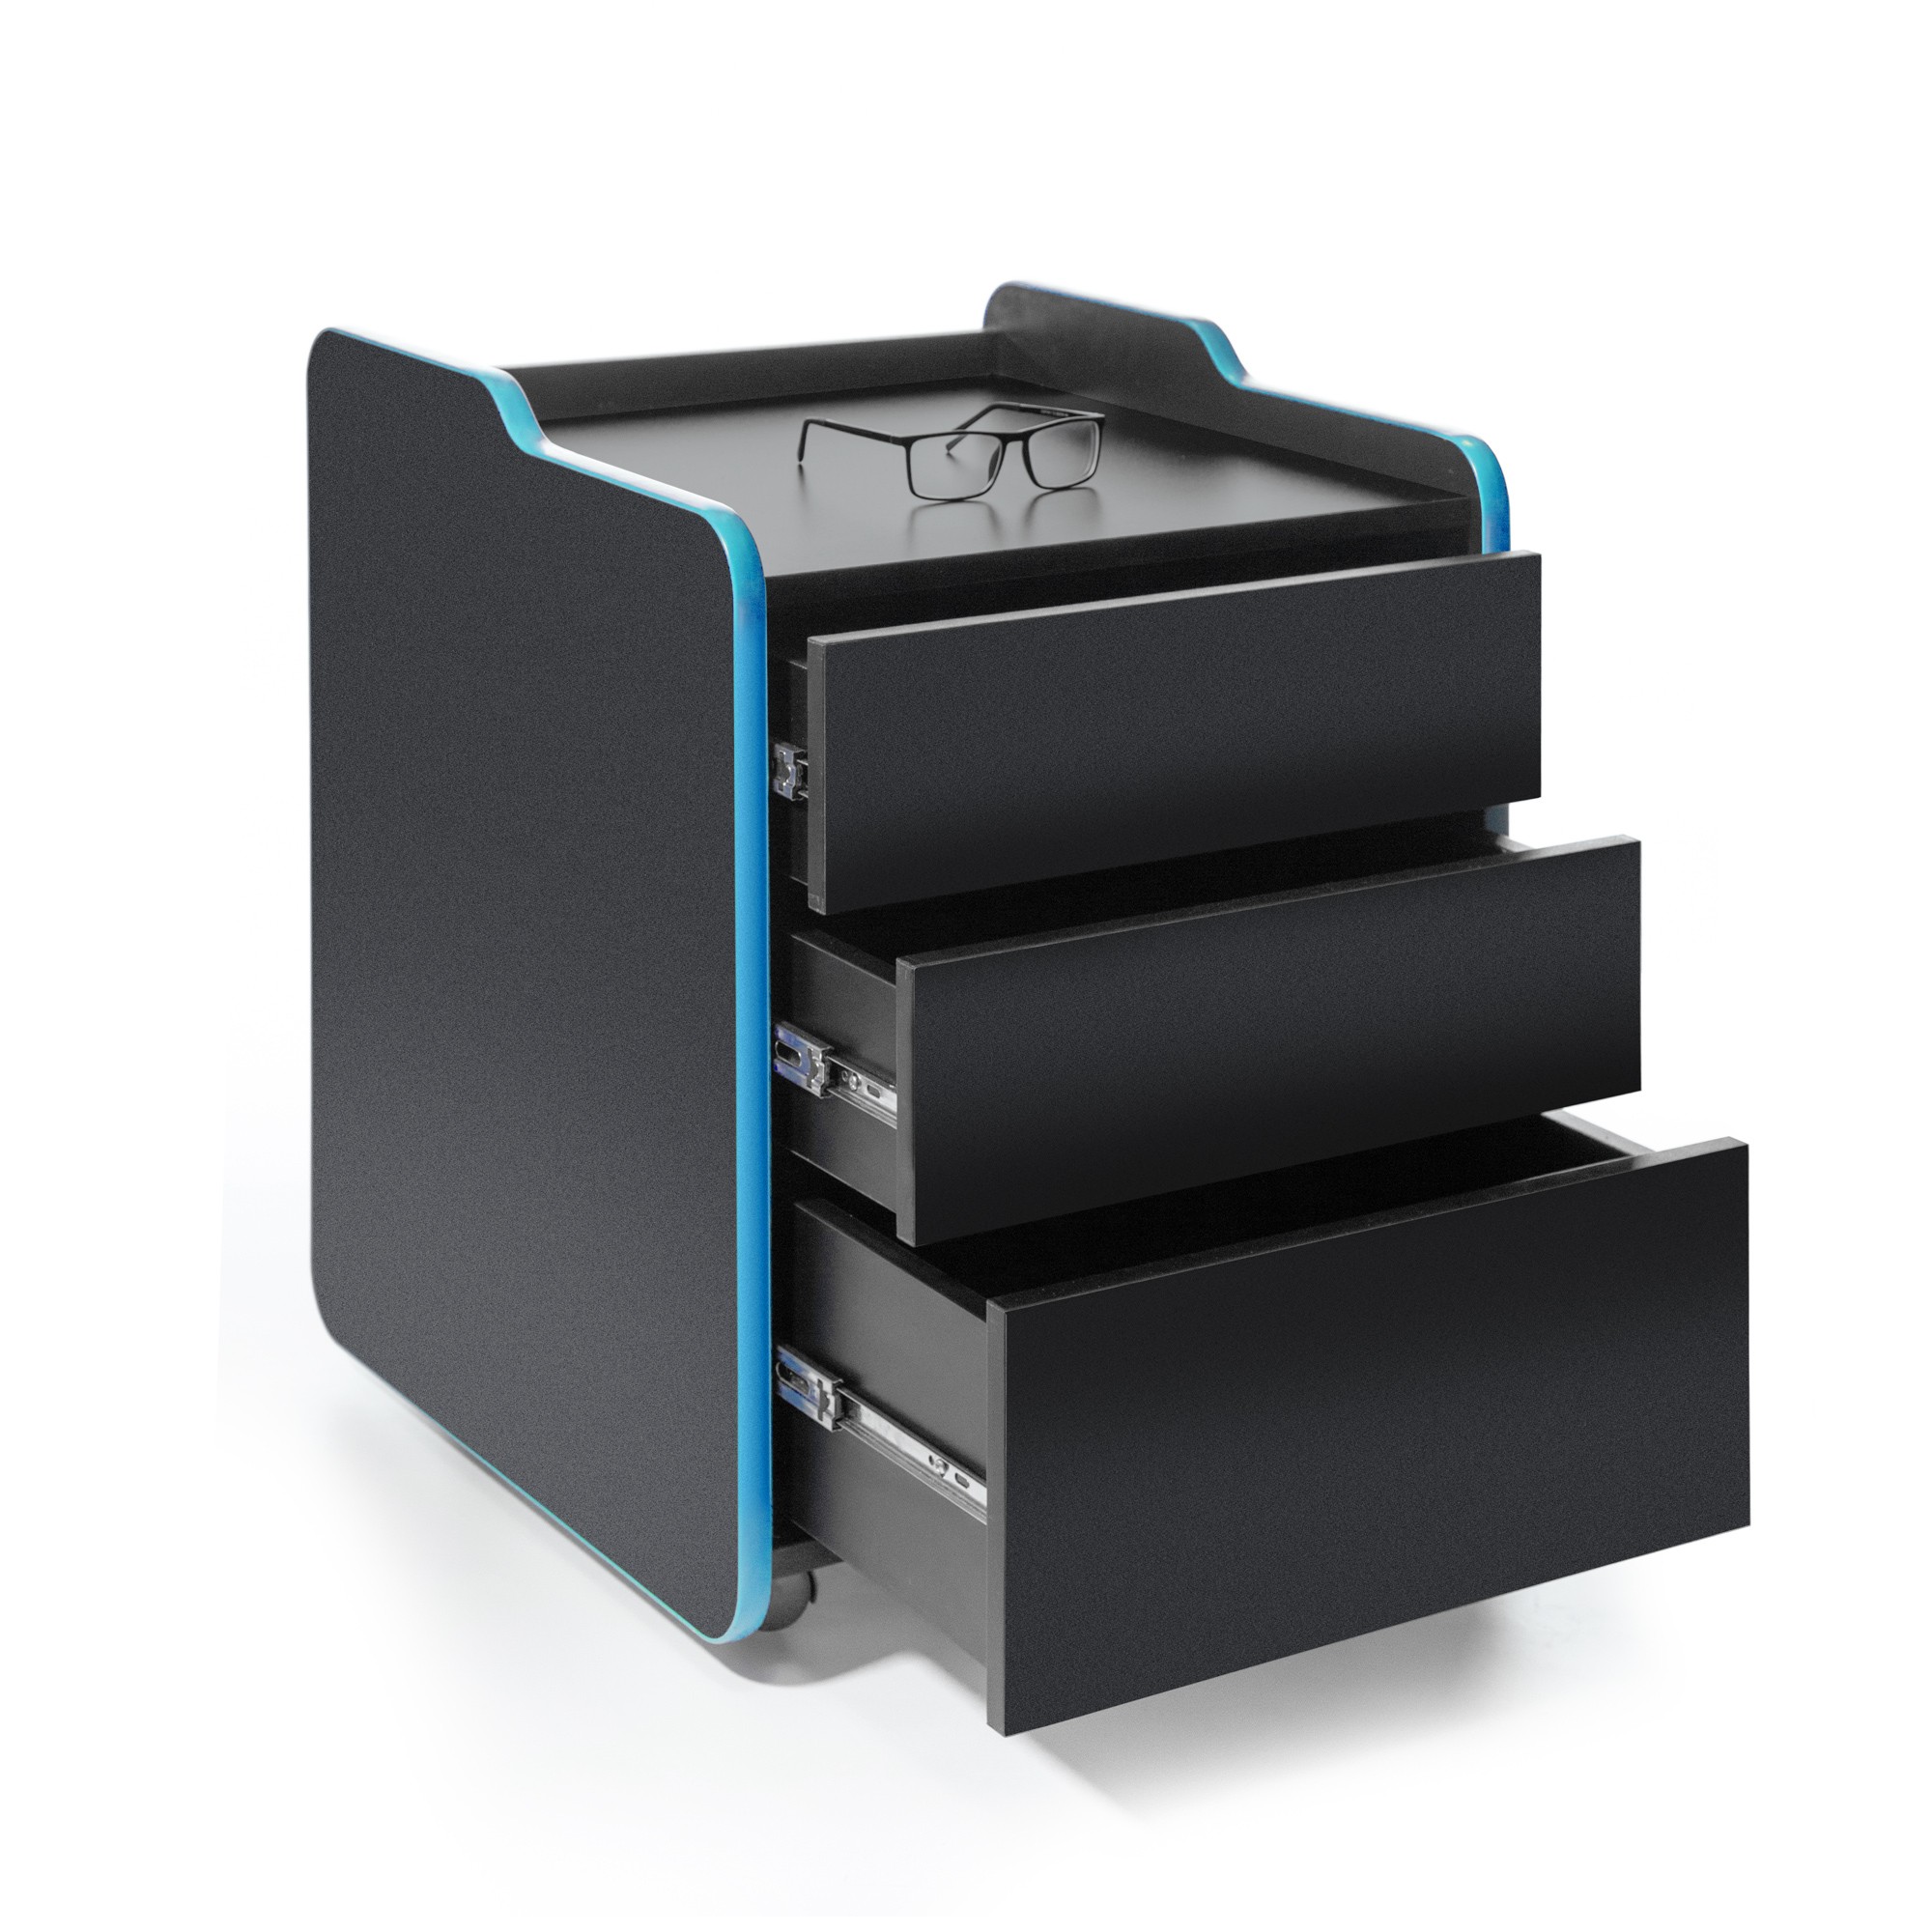 Тумба для игрового компьютерного стола VMMGAME CASE 50 с ящиками, черно-синий